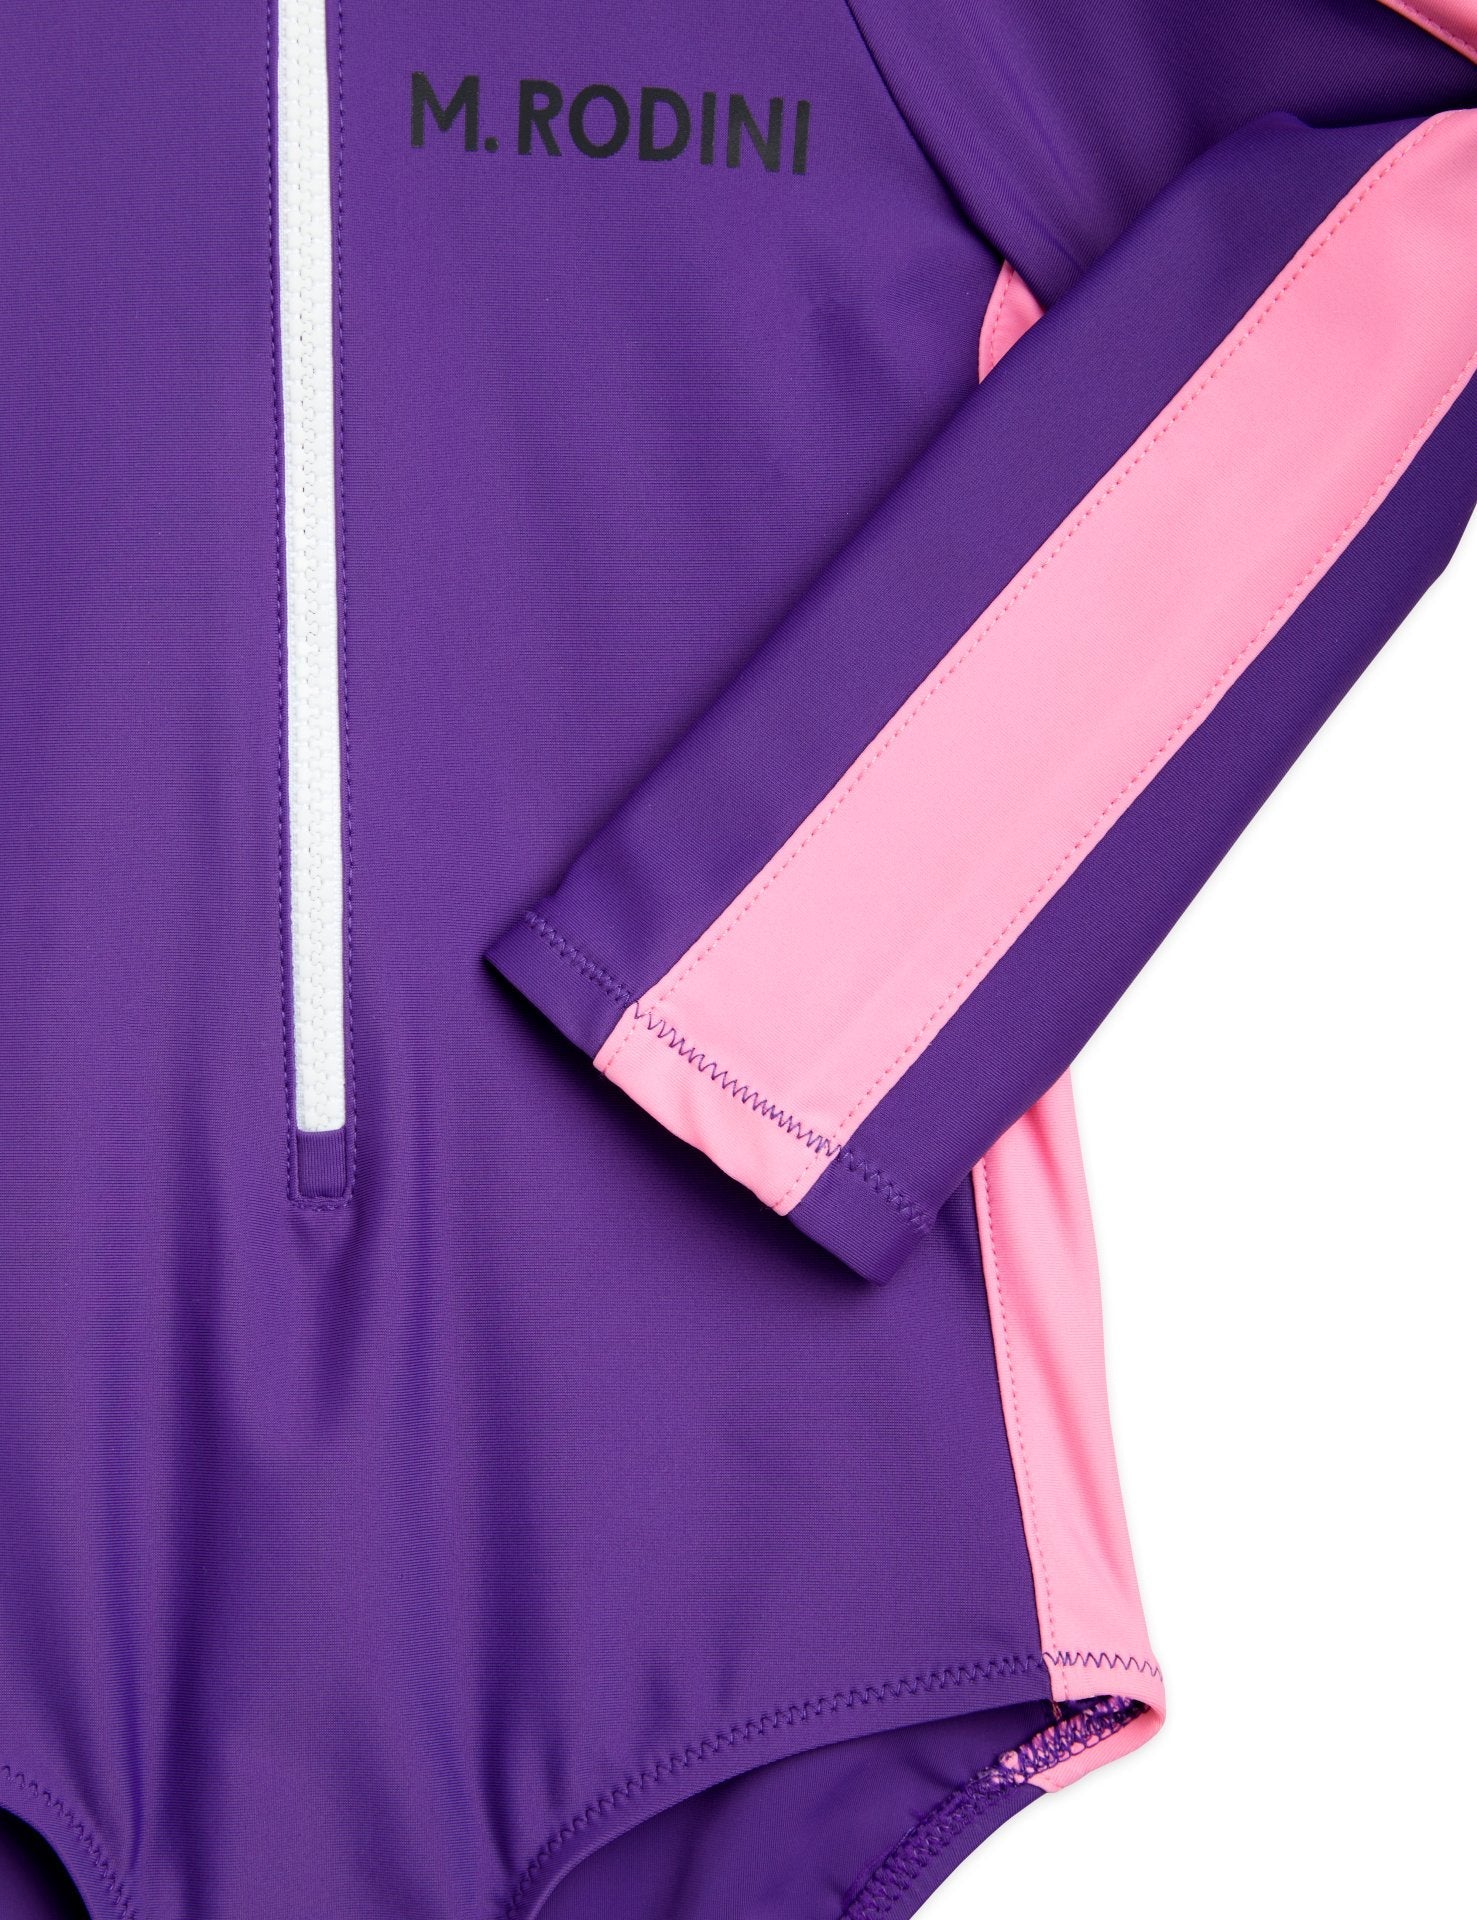 Stripe LS UV Swimsuit - Mini Rodini